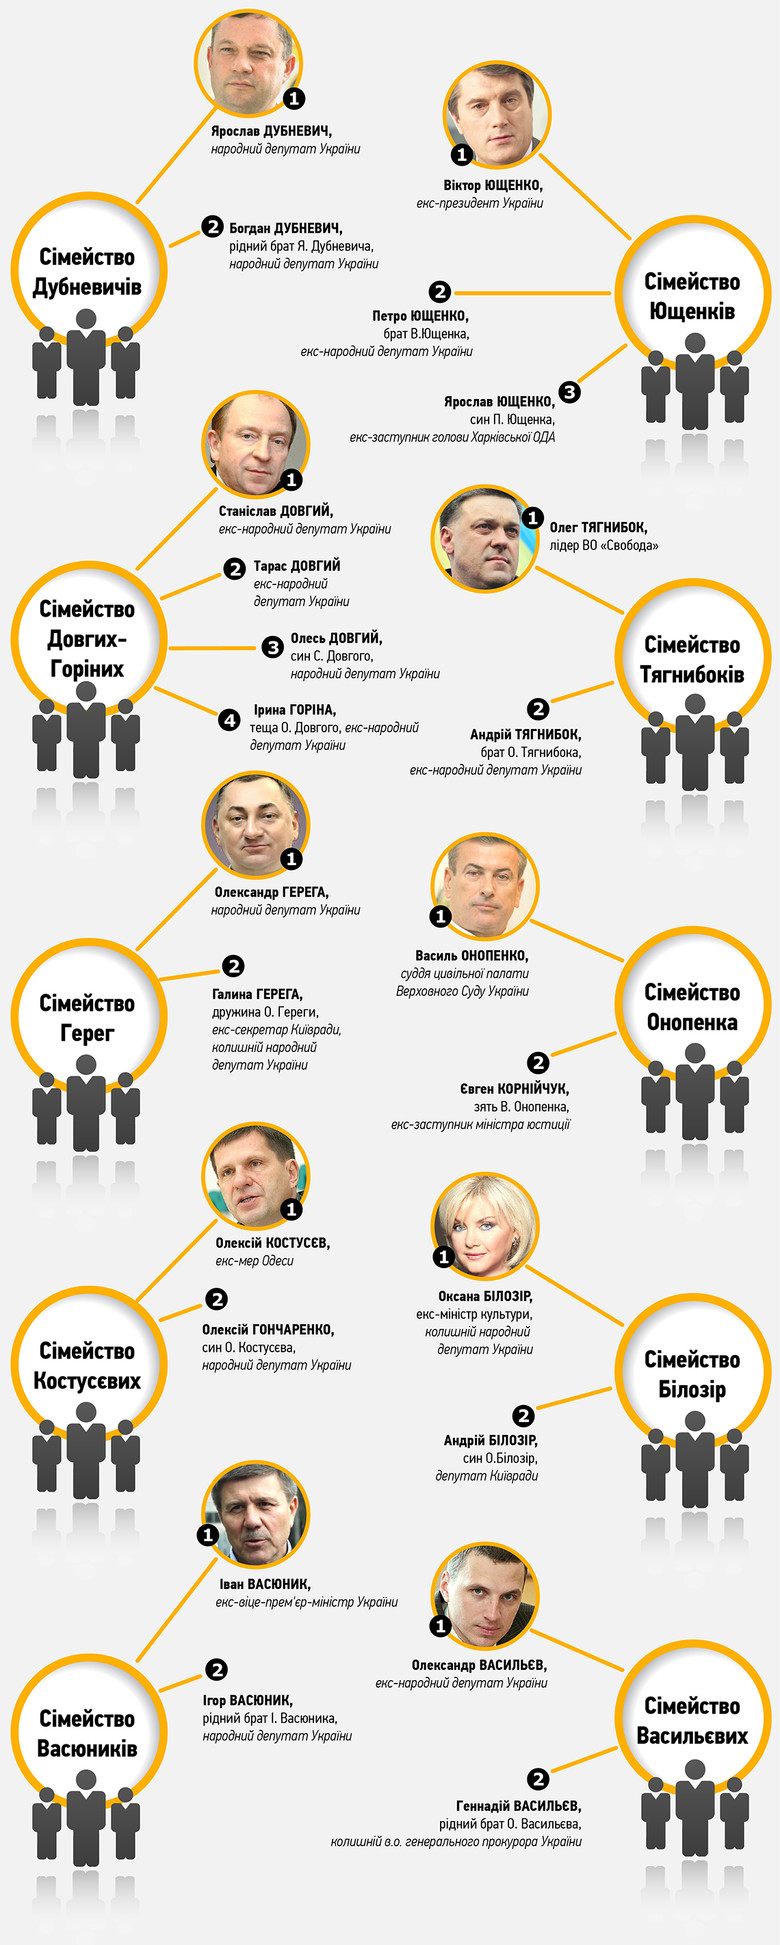 «Слово и Дело» решило визуализировать материал главного редактора сайта «Еспресо.TV», который составил список родственных связей в украинской политике.